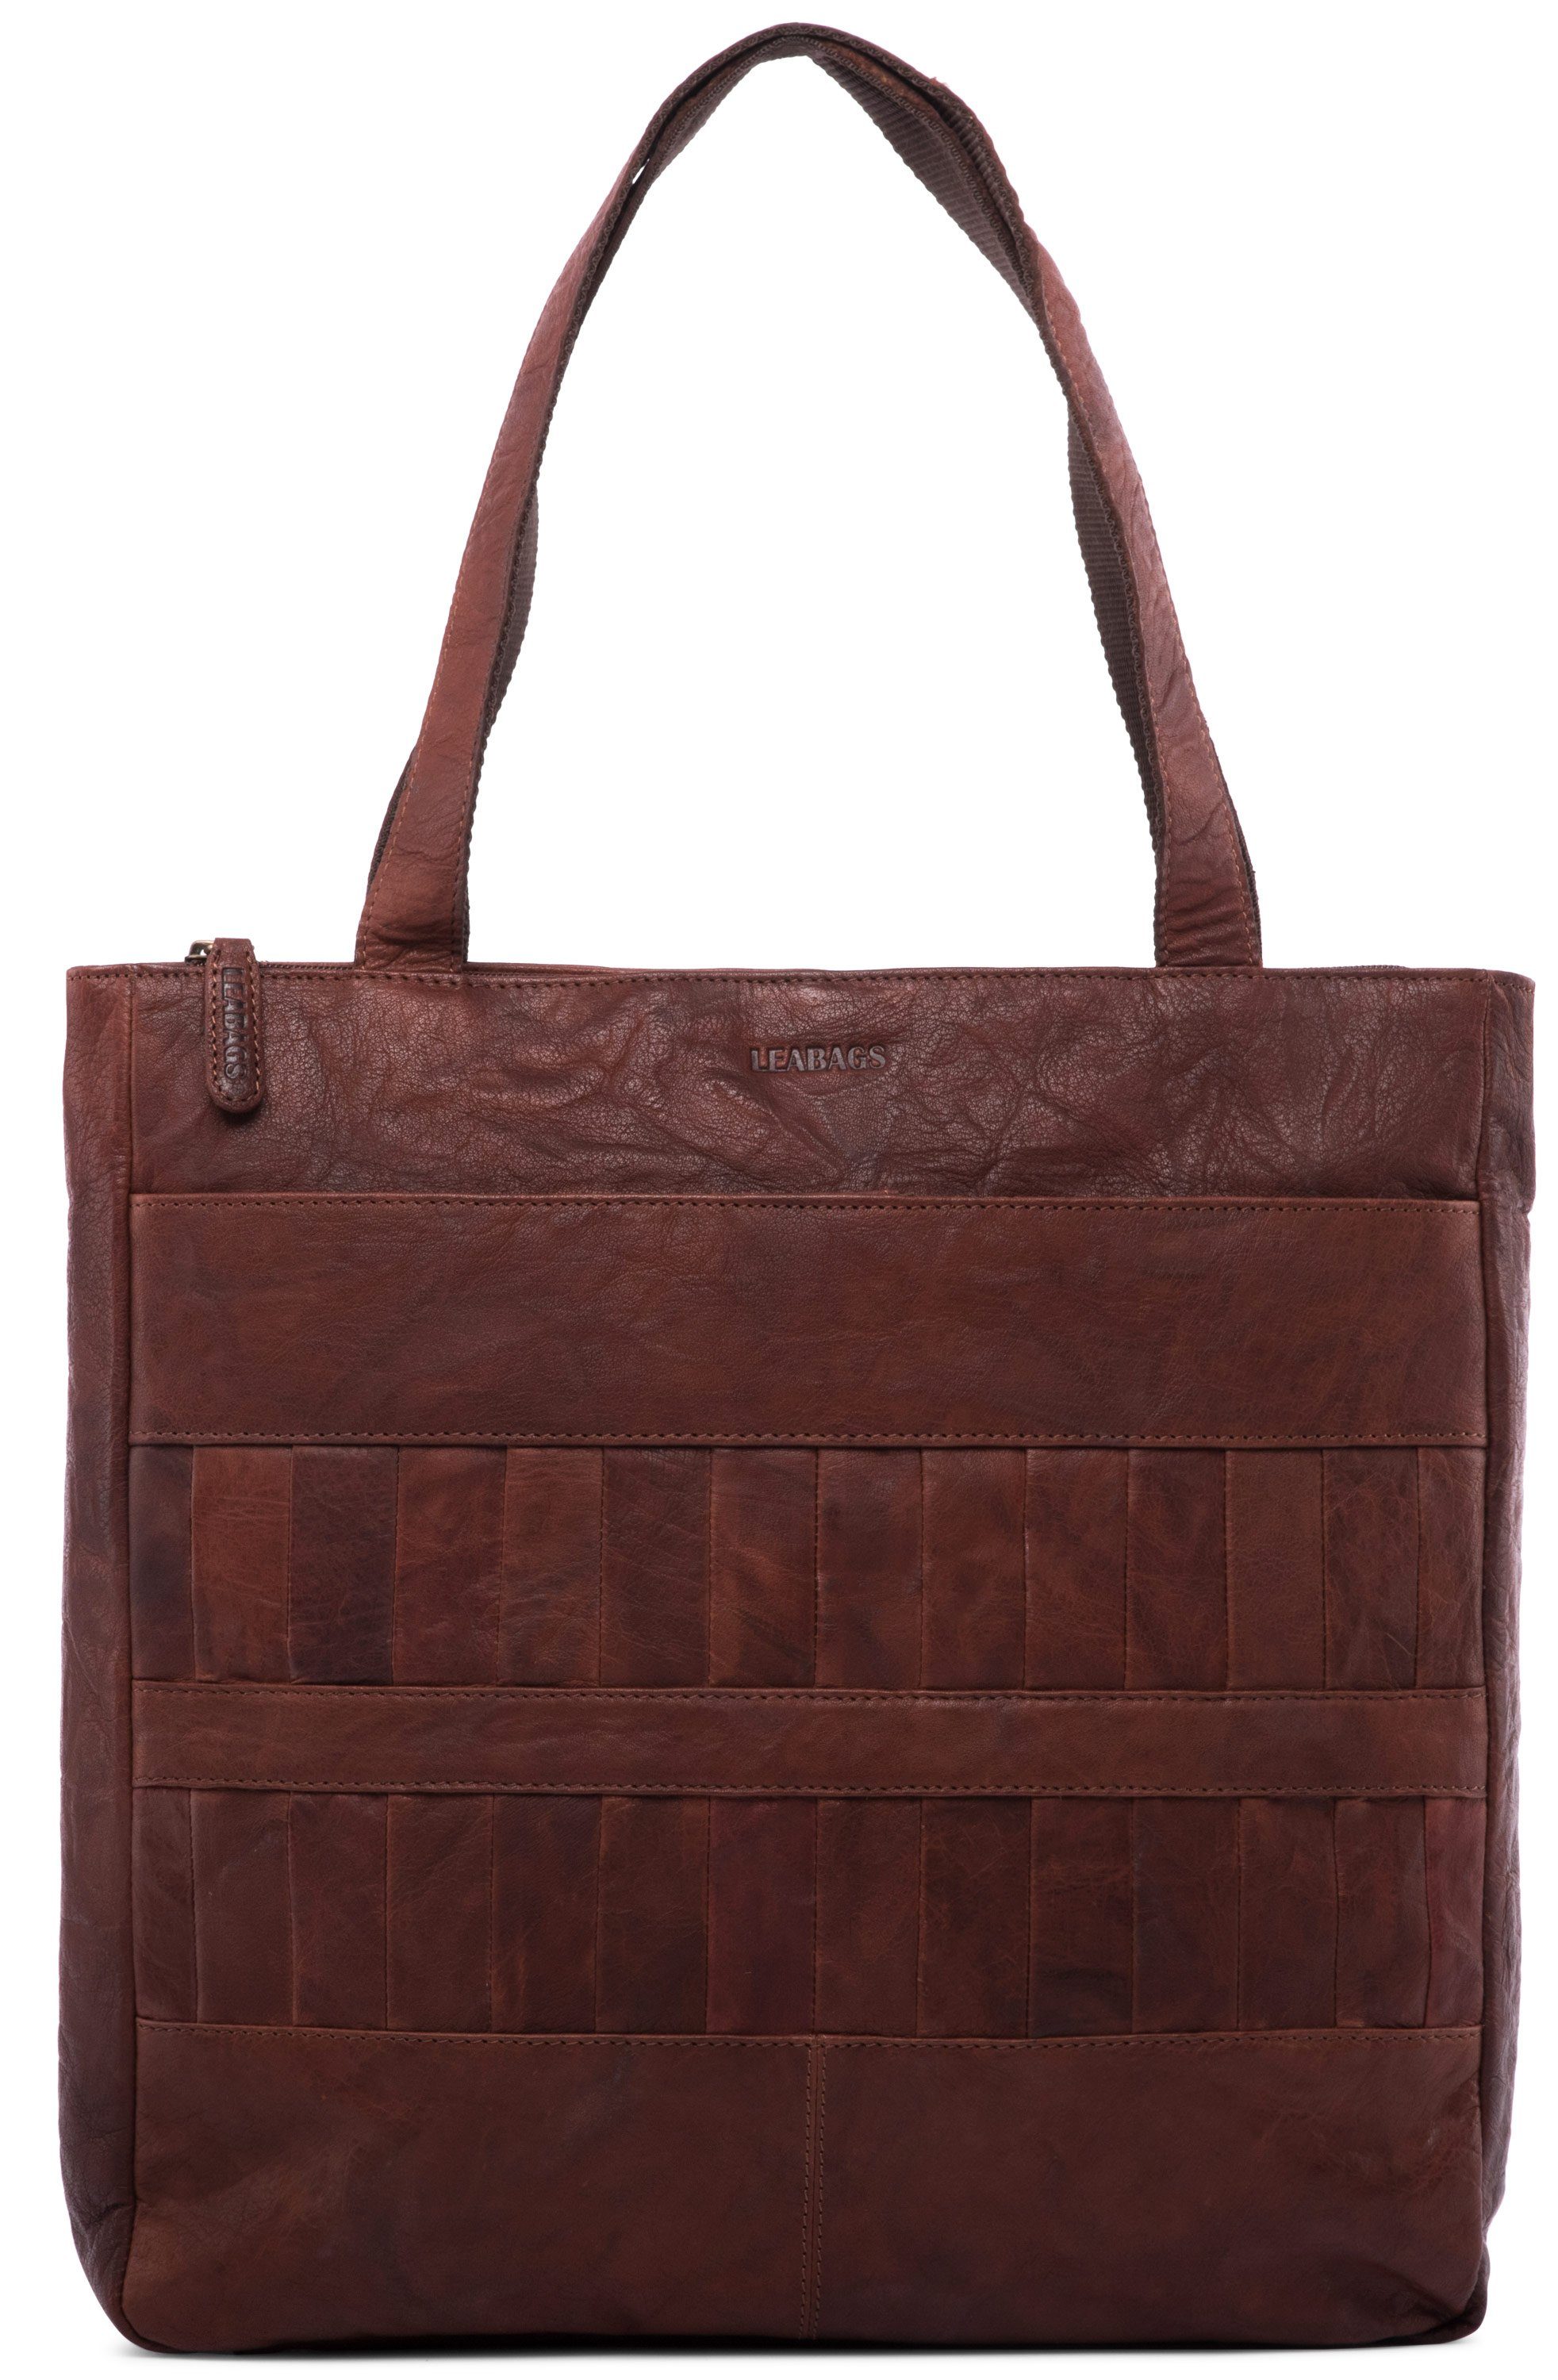 LEABAGS Handtasche »Cirebon«, Handtasche aus echtem Büffel-Leder im Vintage  Look - Bole online kaufen | OTTO